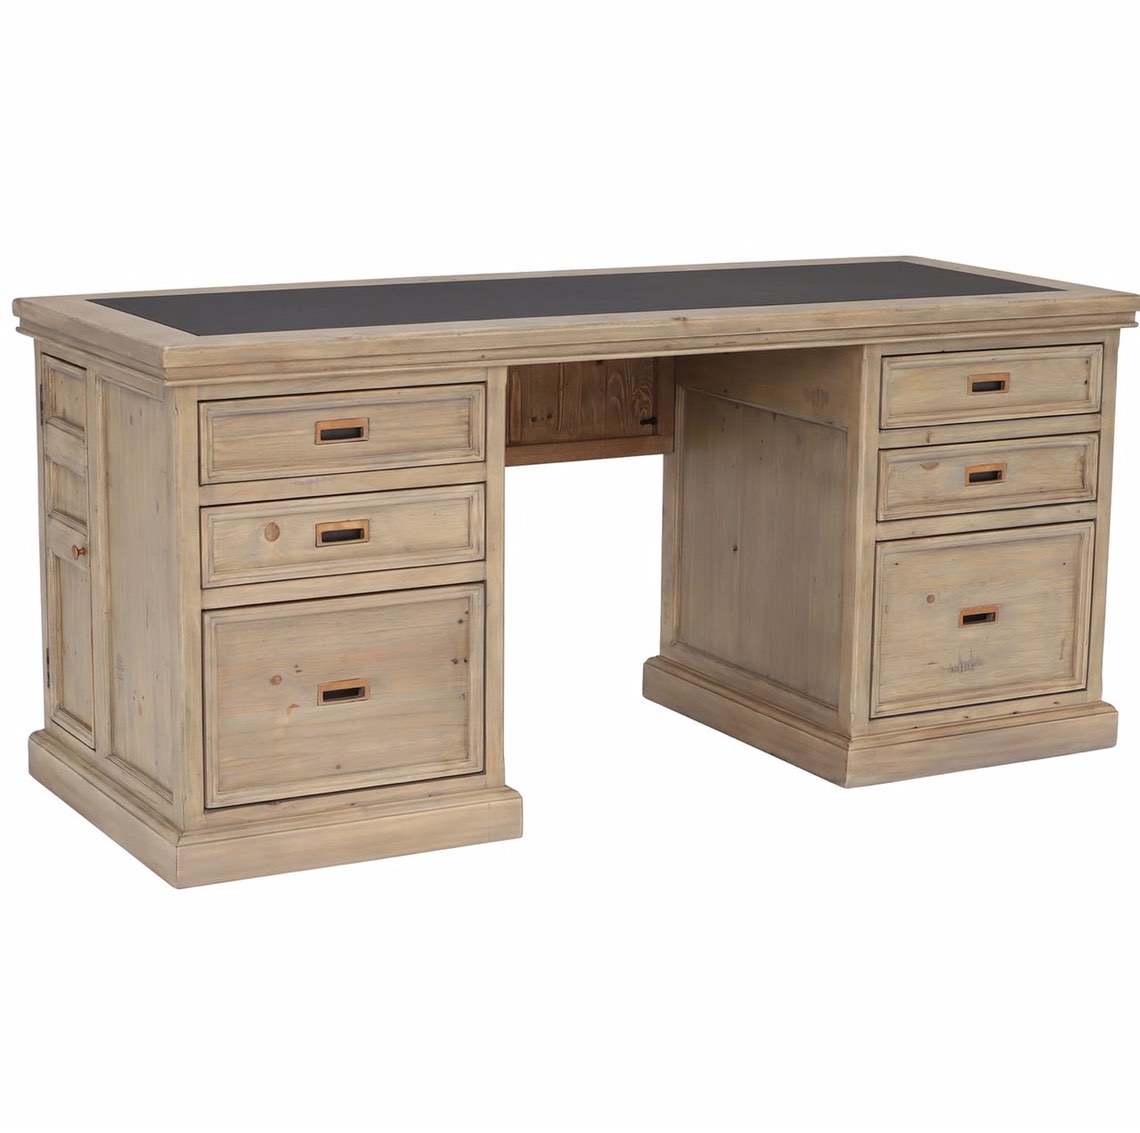 Made to Order Furniture. - Desk 027-01